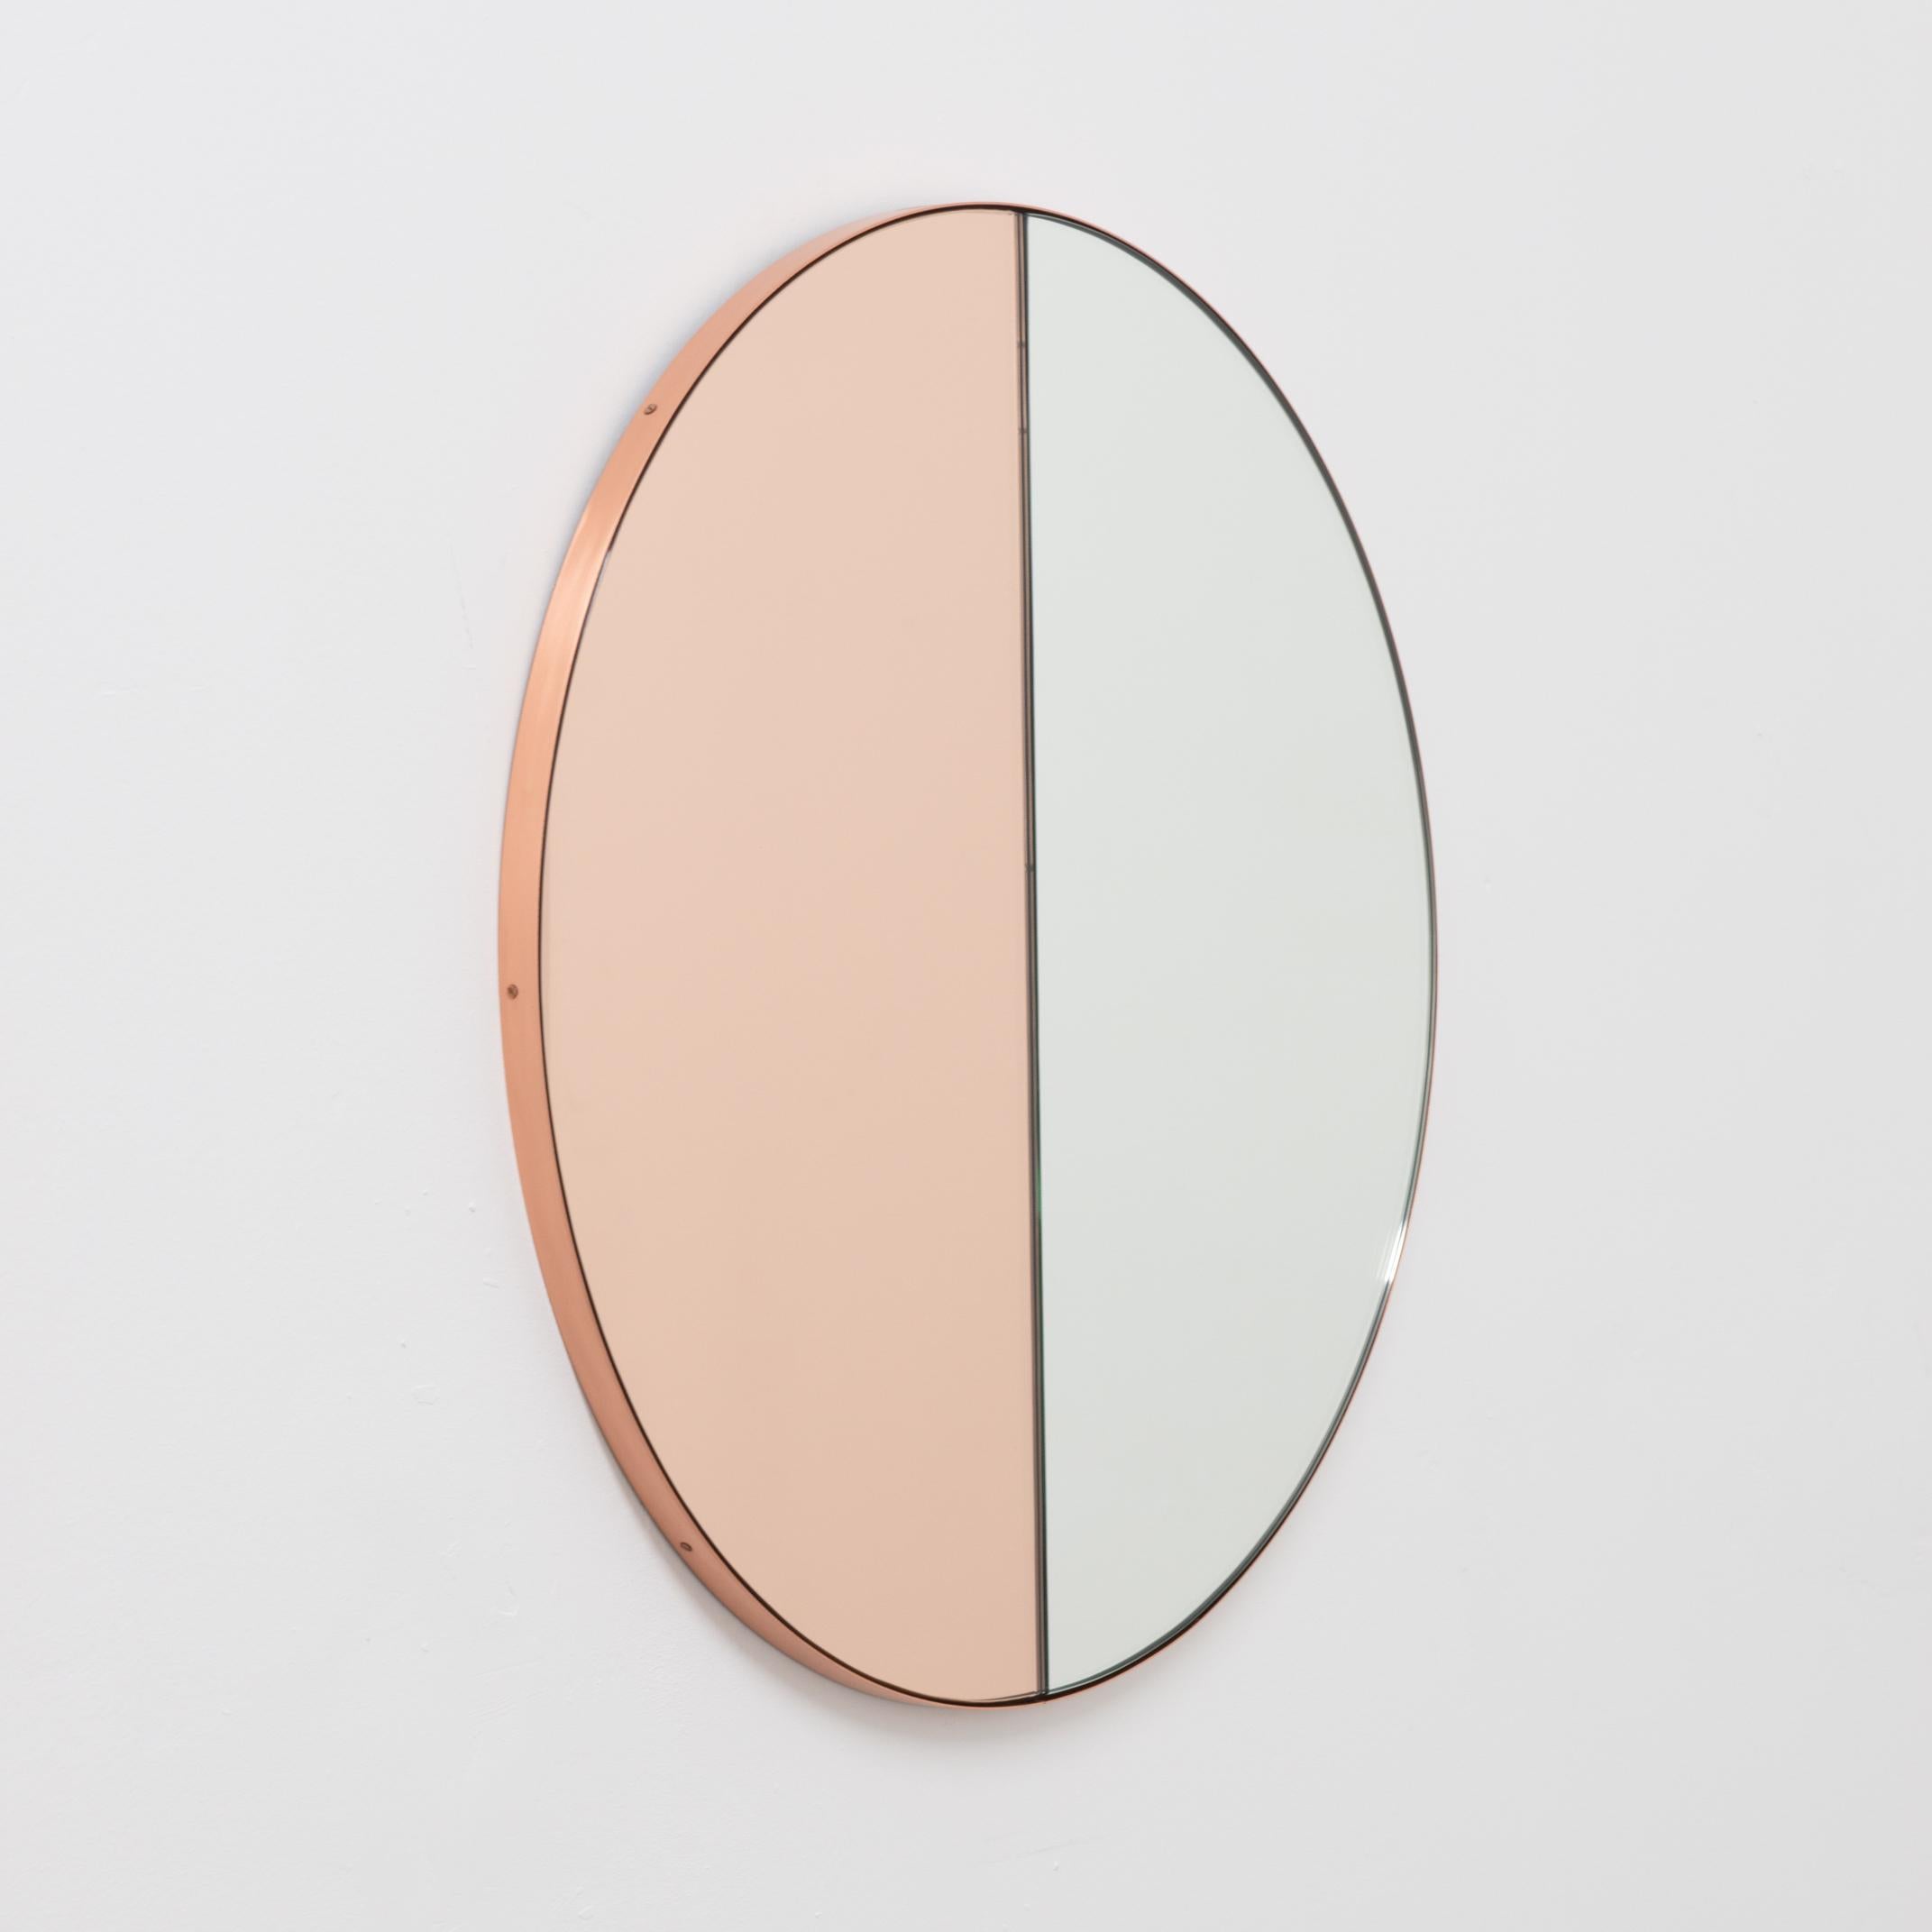 Miroir Orbis Dualis™ contemporain à teinte mixte (argent et or rose / pêche) avec un cadre chic en cuivre brossé. Conçu et fabriqué à la main à Londres, au Royaume-Uni.

Tous les miroirs sont équipés d'un ingénieux système de tasseaux à la française